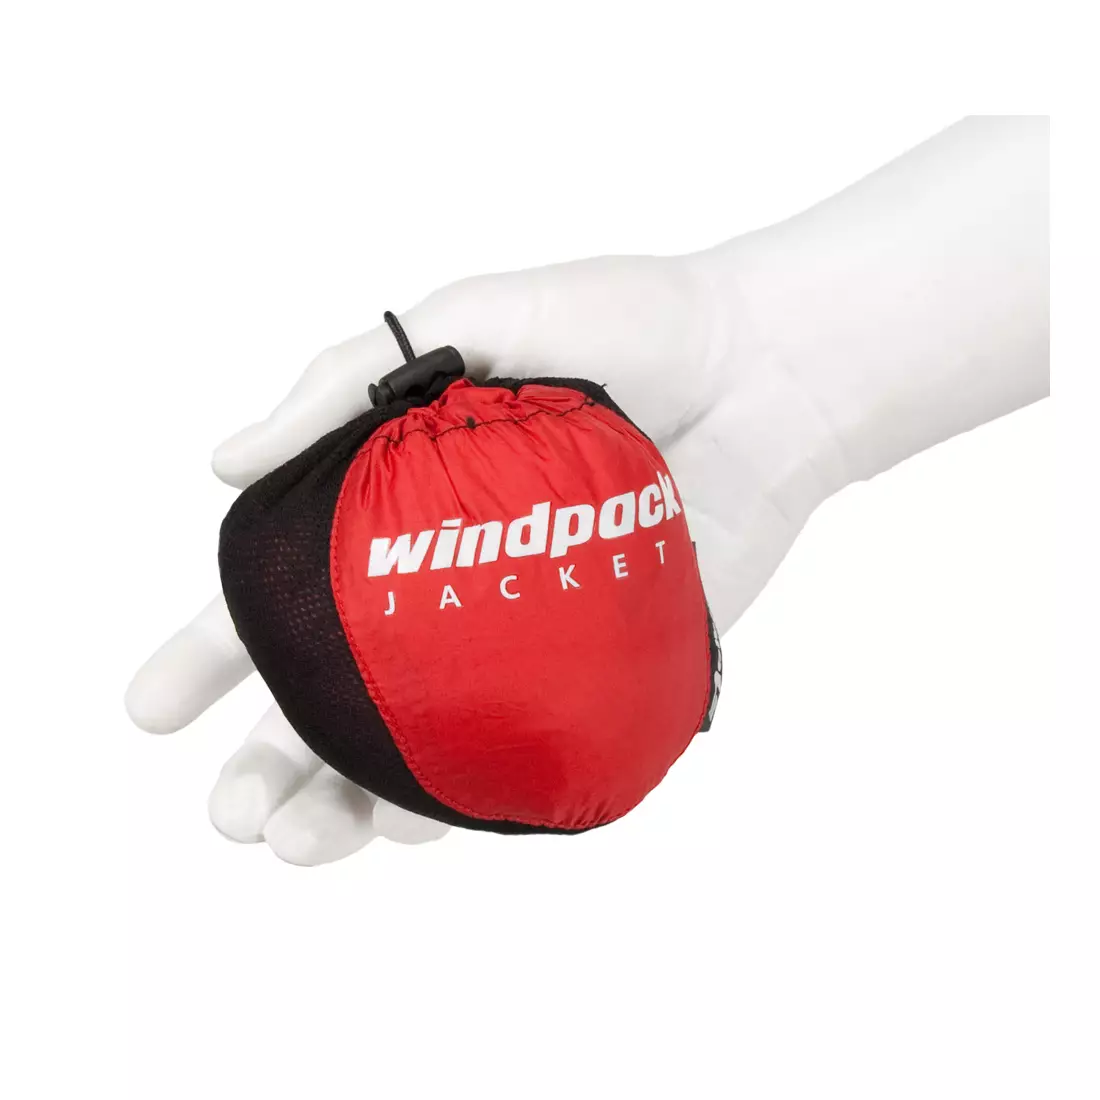 NEWLINE WINDPACK JACKET - ultralehká sportovní větrovka 14176-040, barva: červená